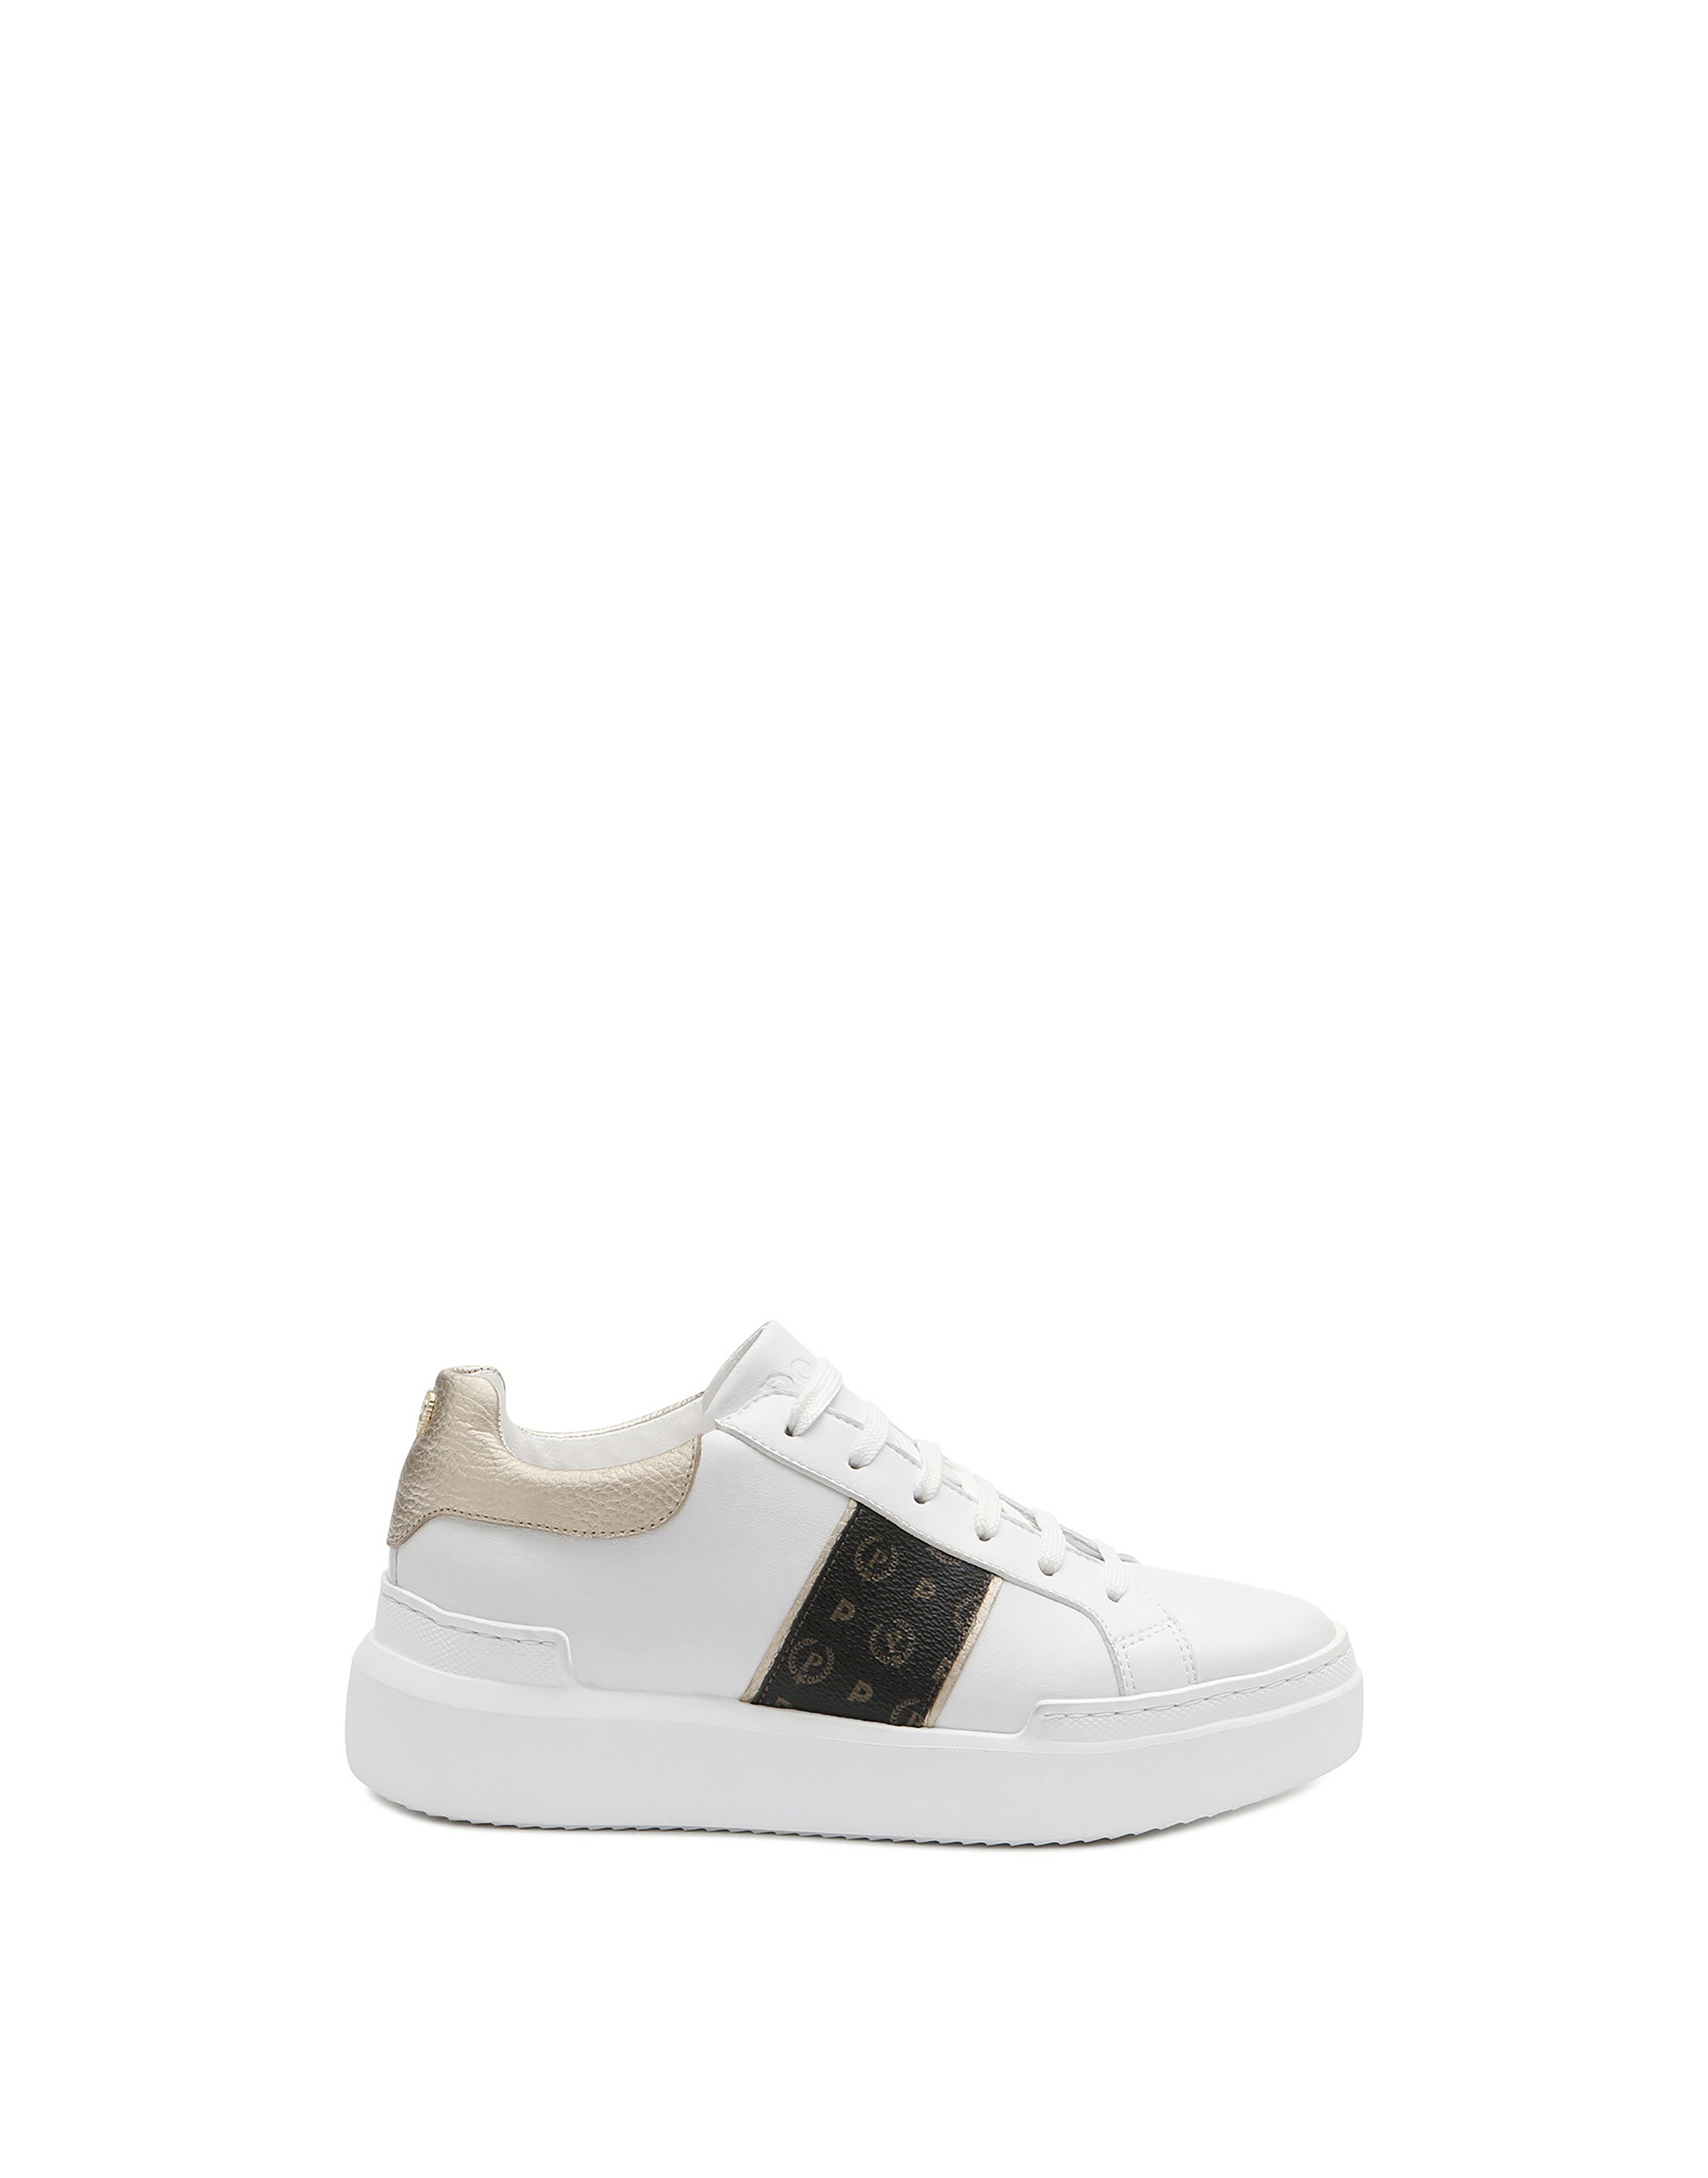 Sneakers Nero/platino/bianco Donna - Pollini Online Boutique